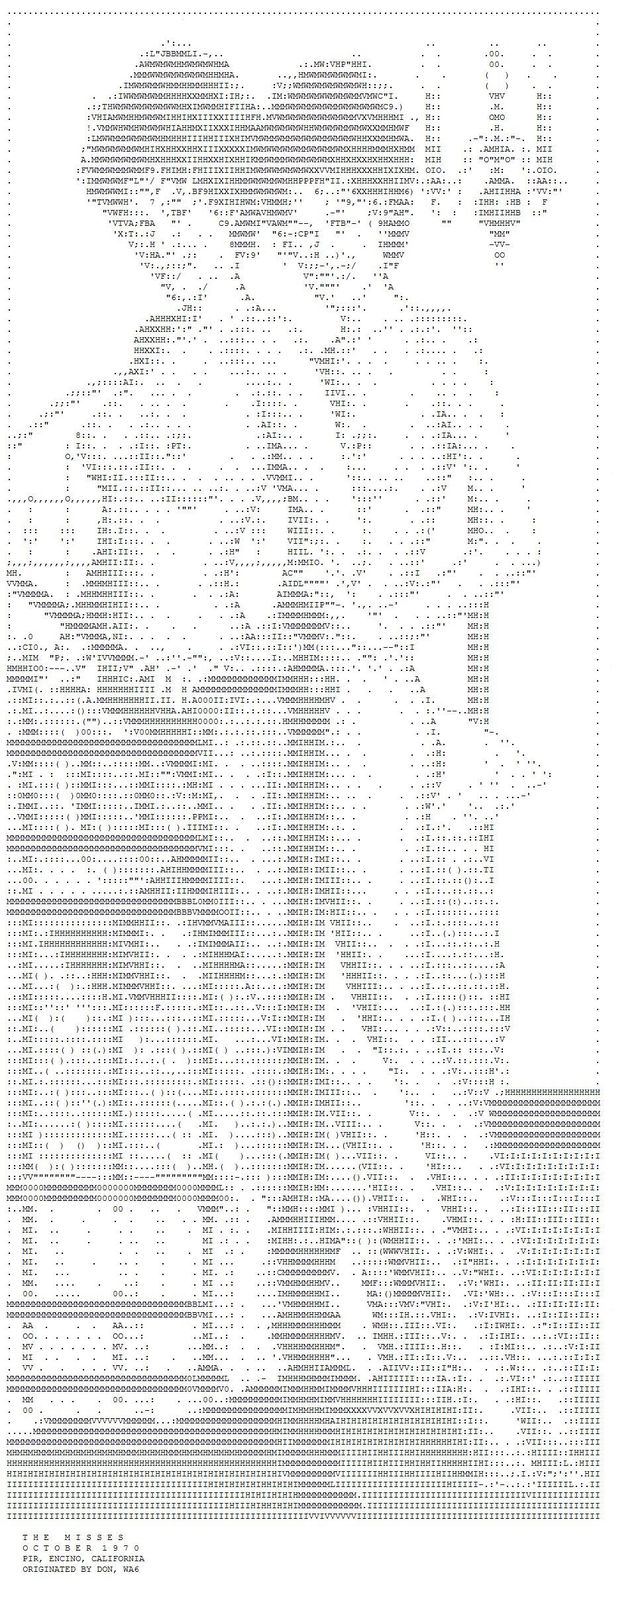 ASCII erotic images - 19